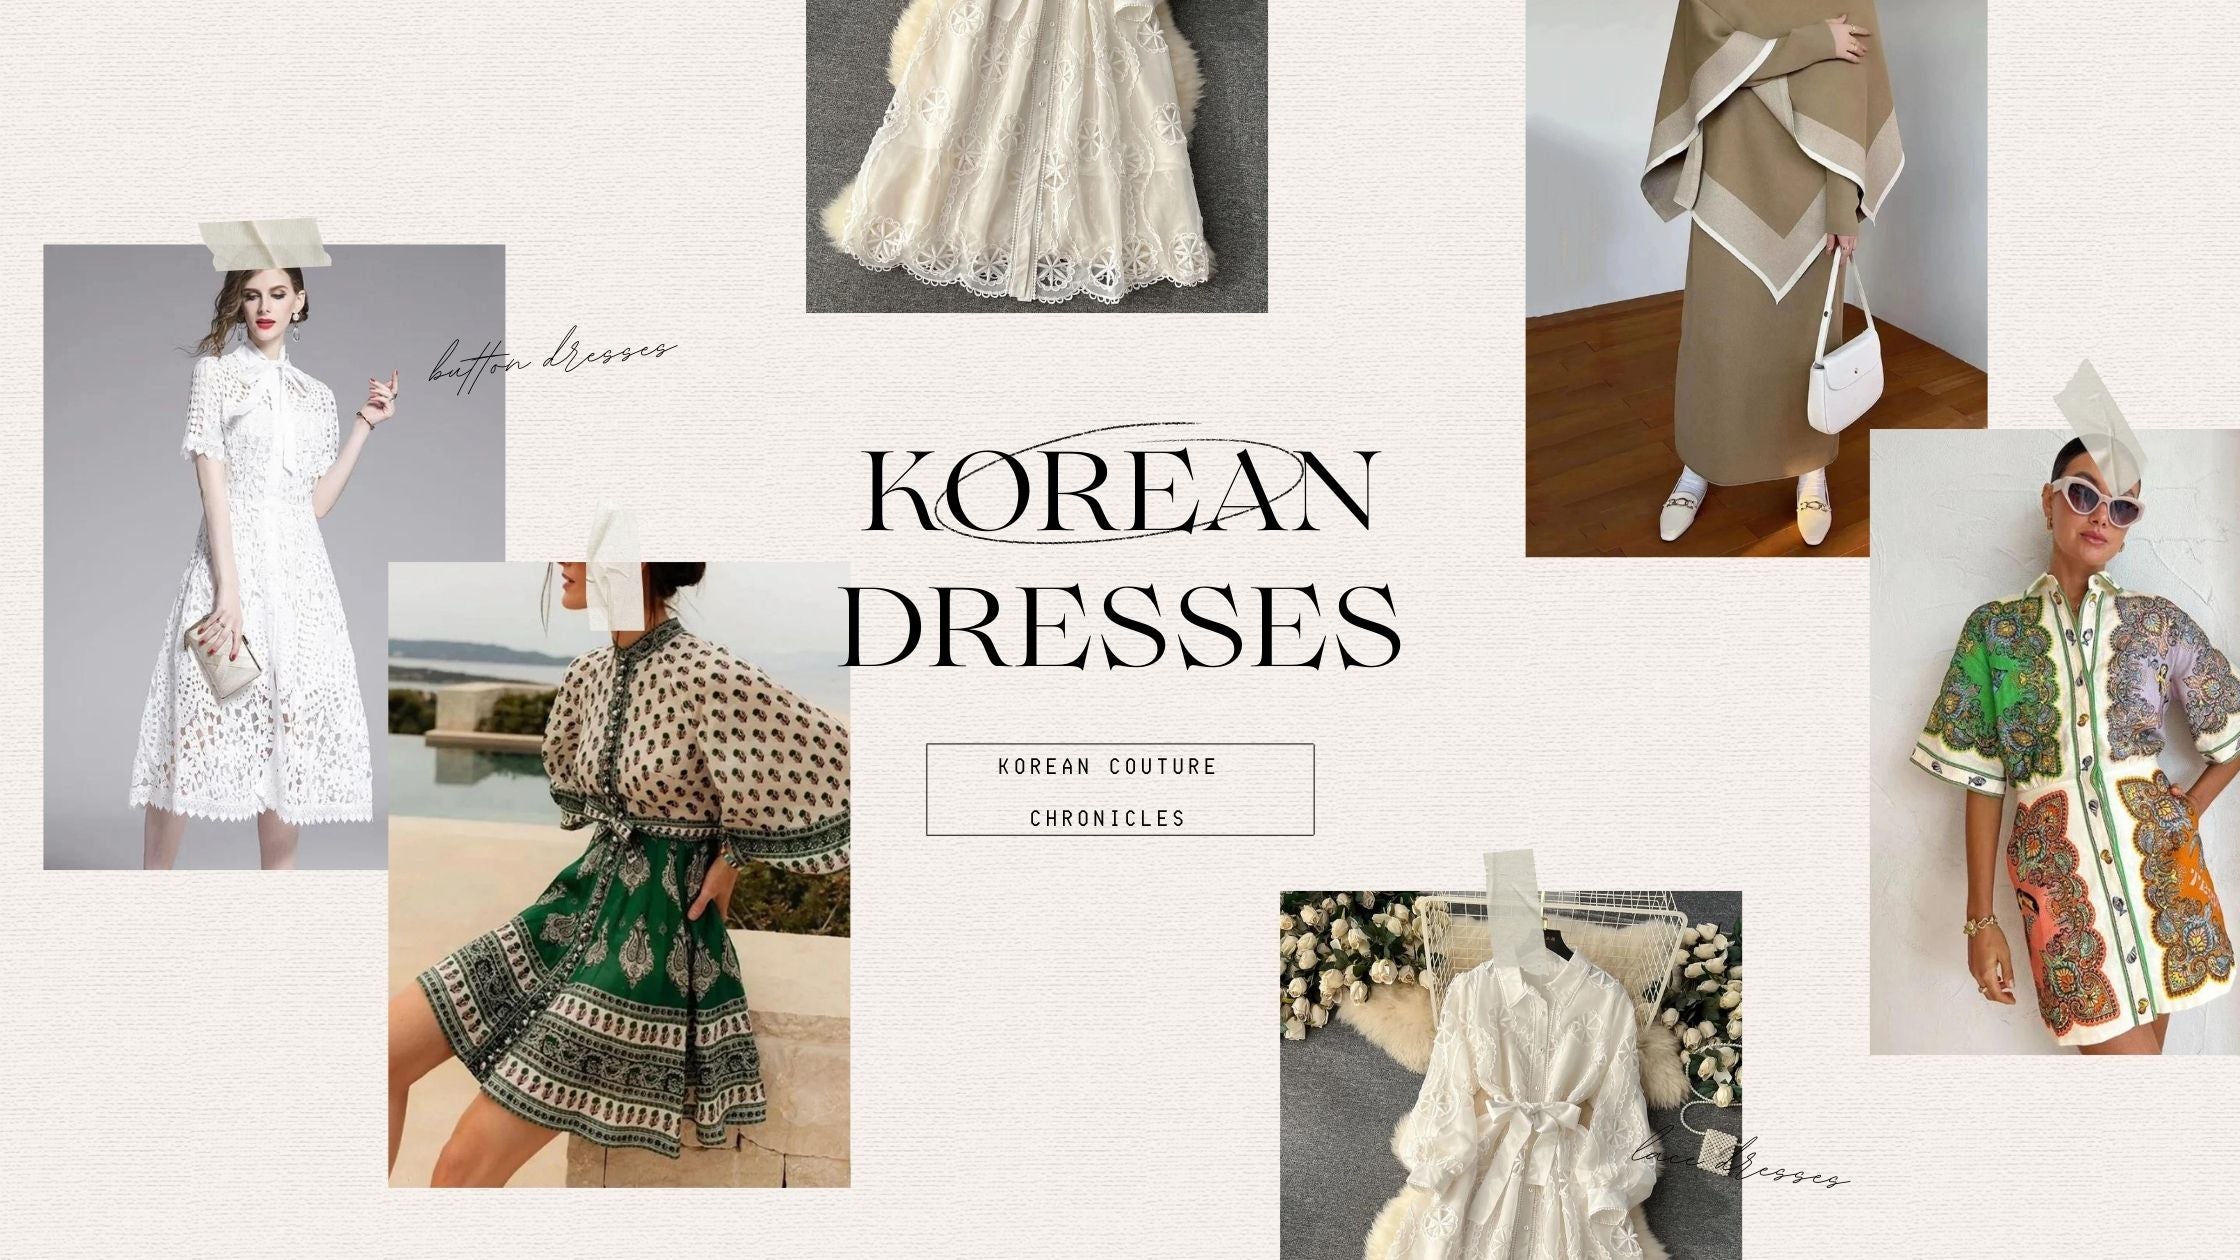 Korean Couture Chronicles: Korean Dresses For Women